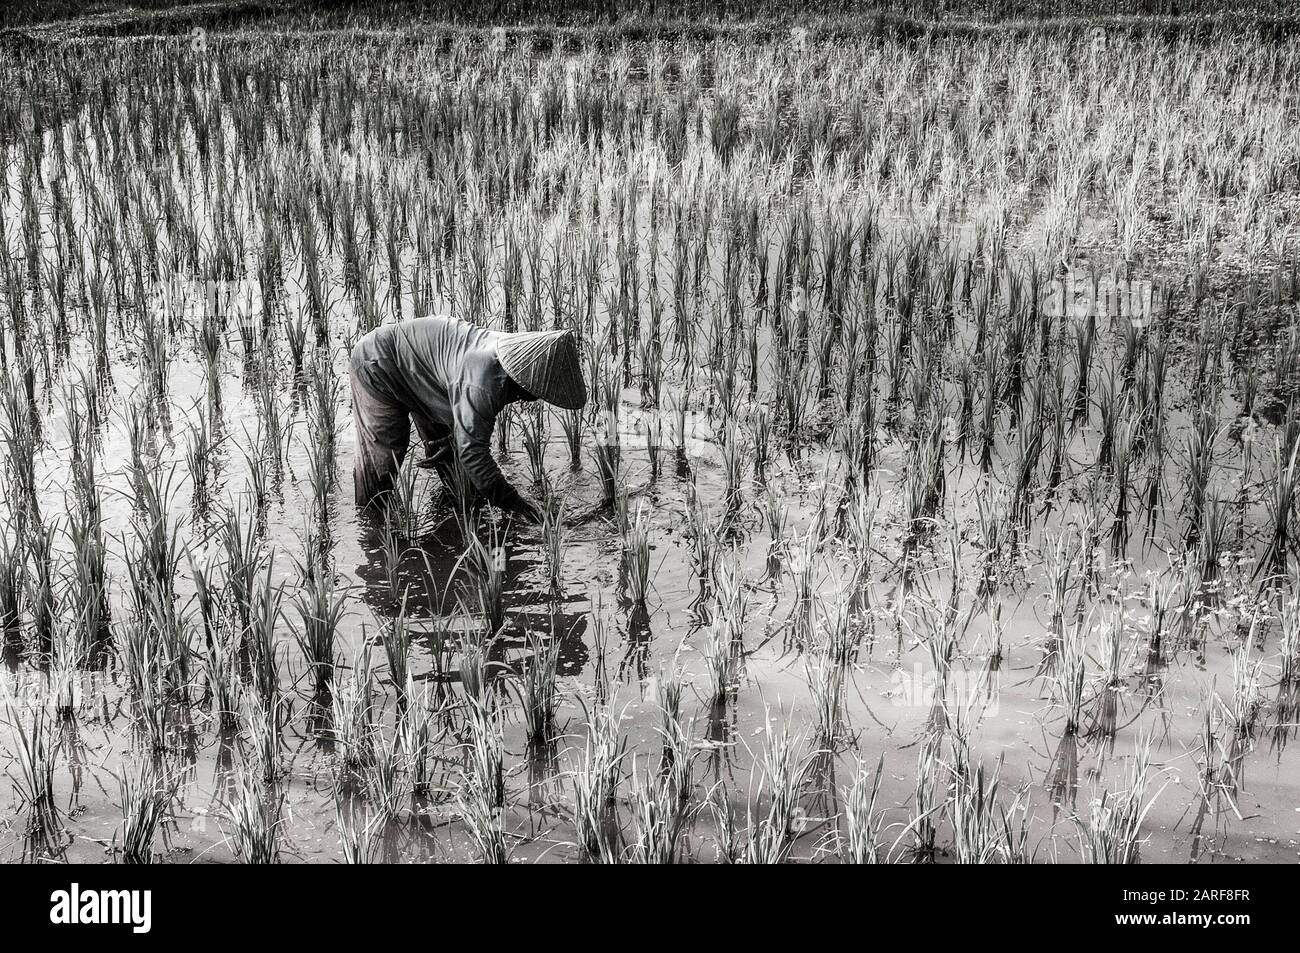 Malaysia, Lankawi, in a rice paddy. Stock Photo